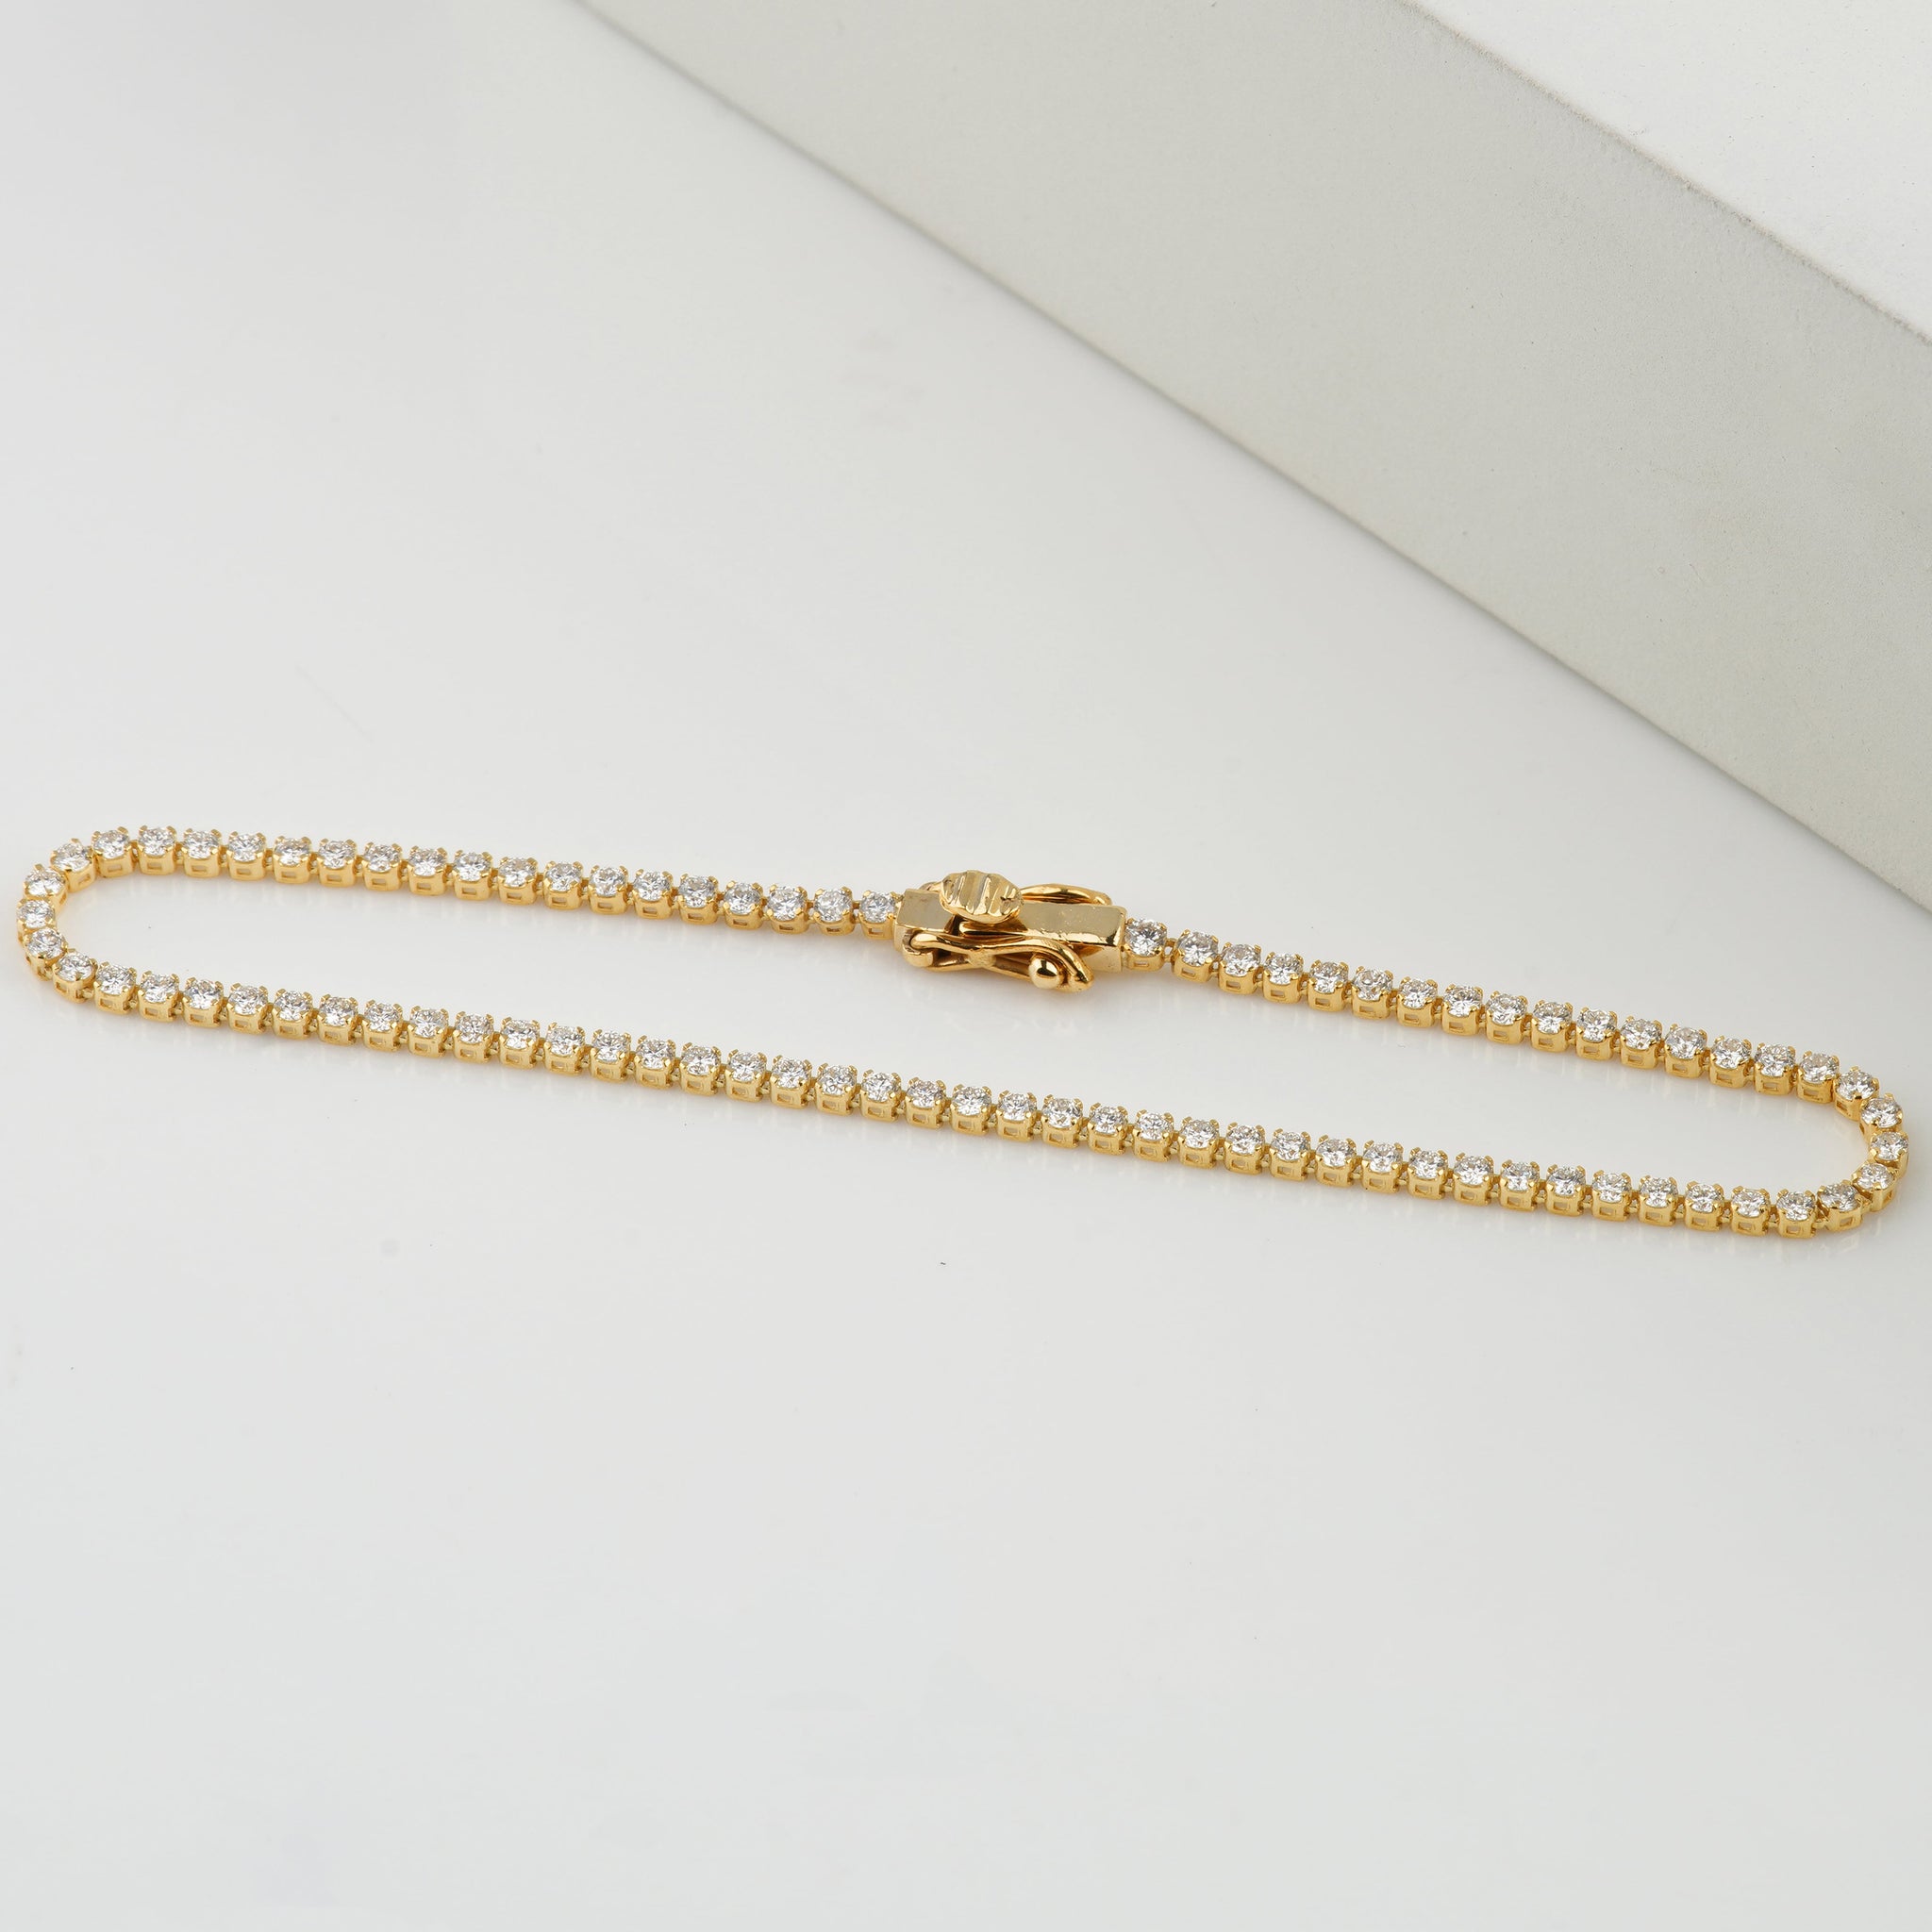 14k Solid Gold Moissanite Tennis Bracelet - 2.5mm